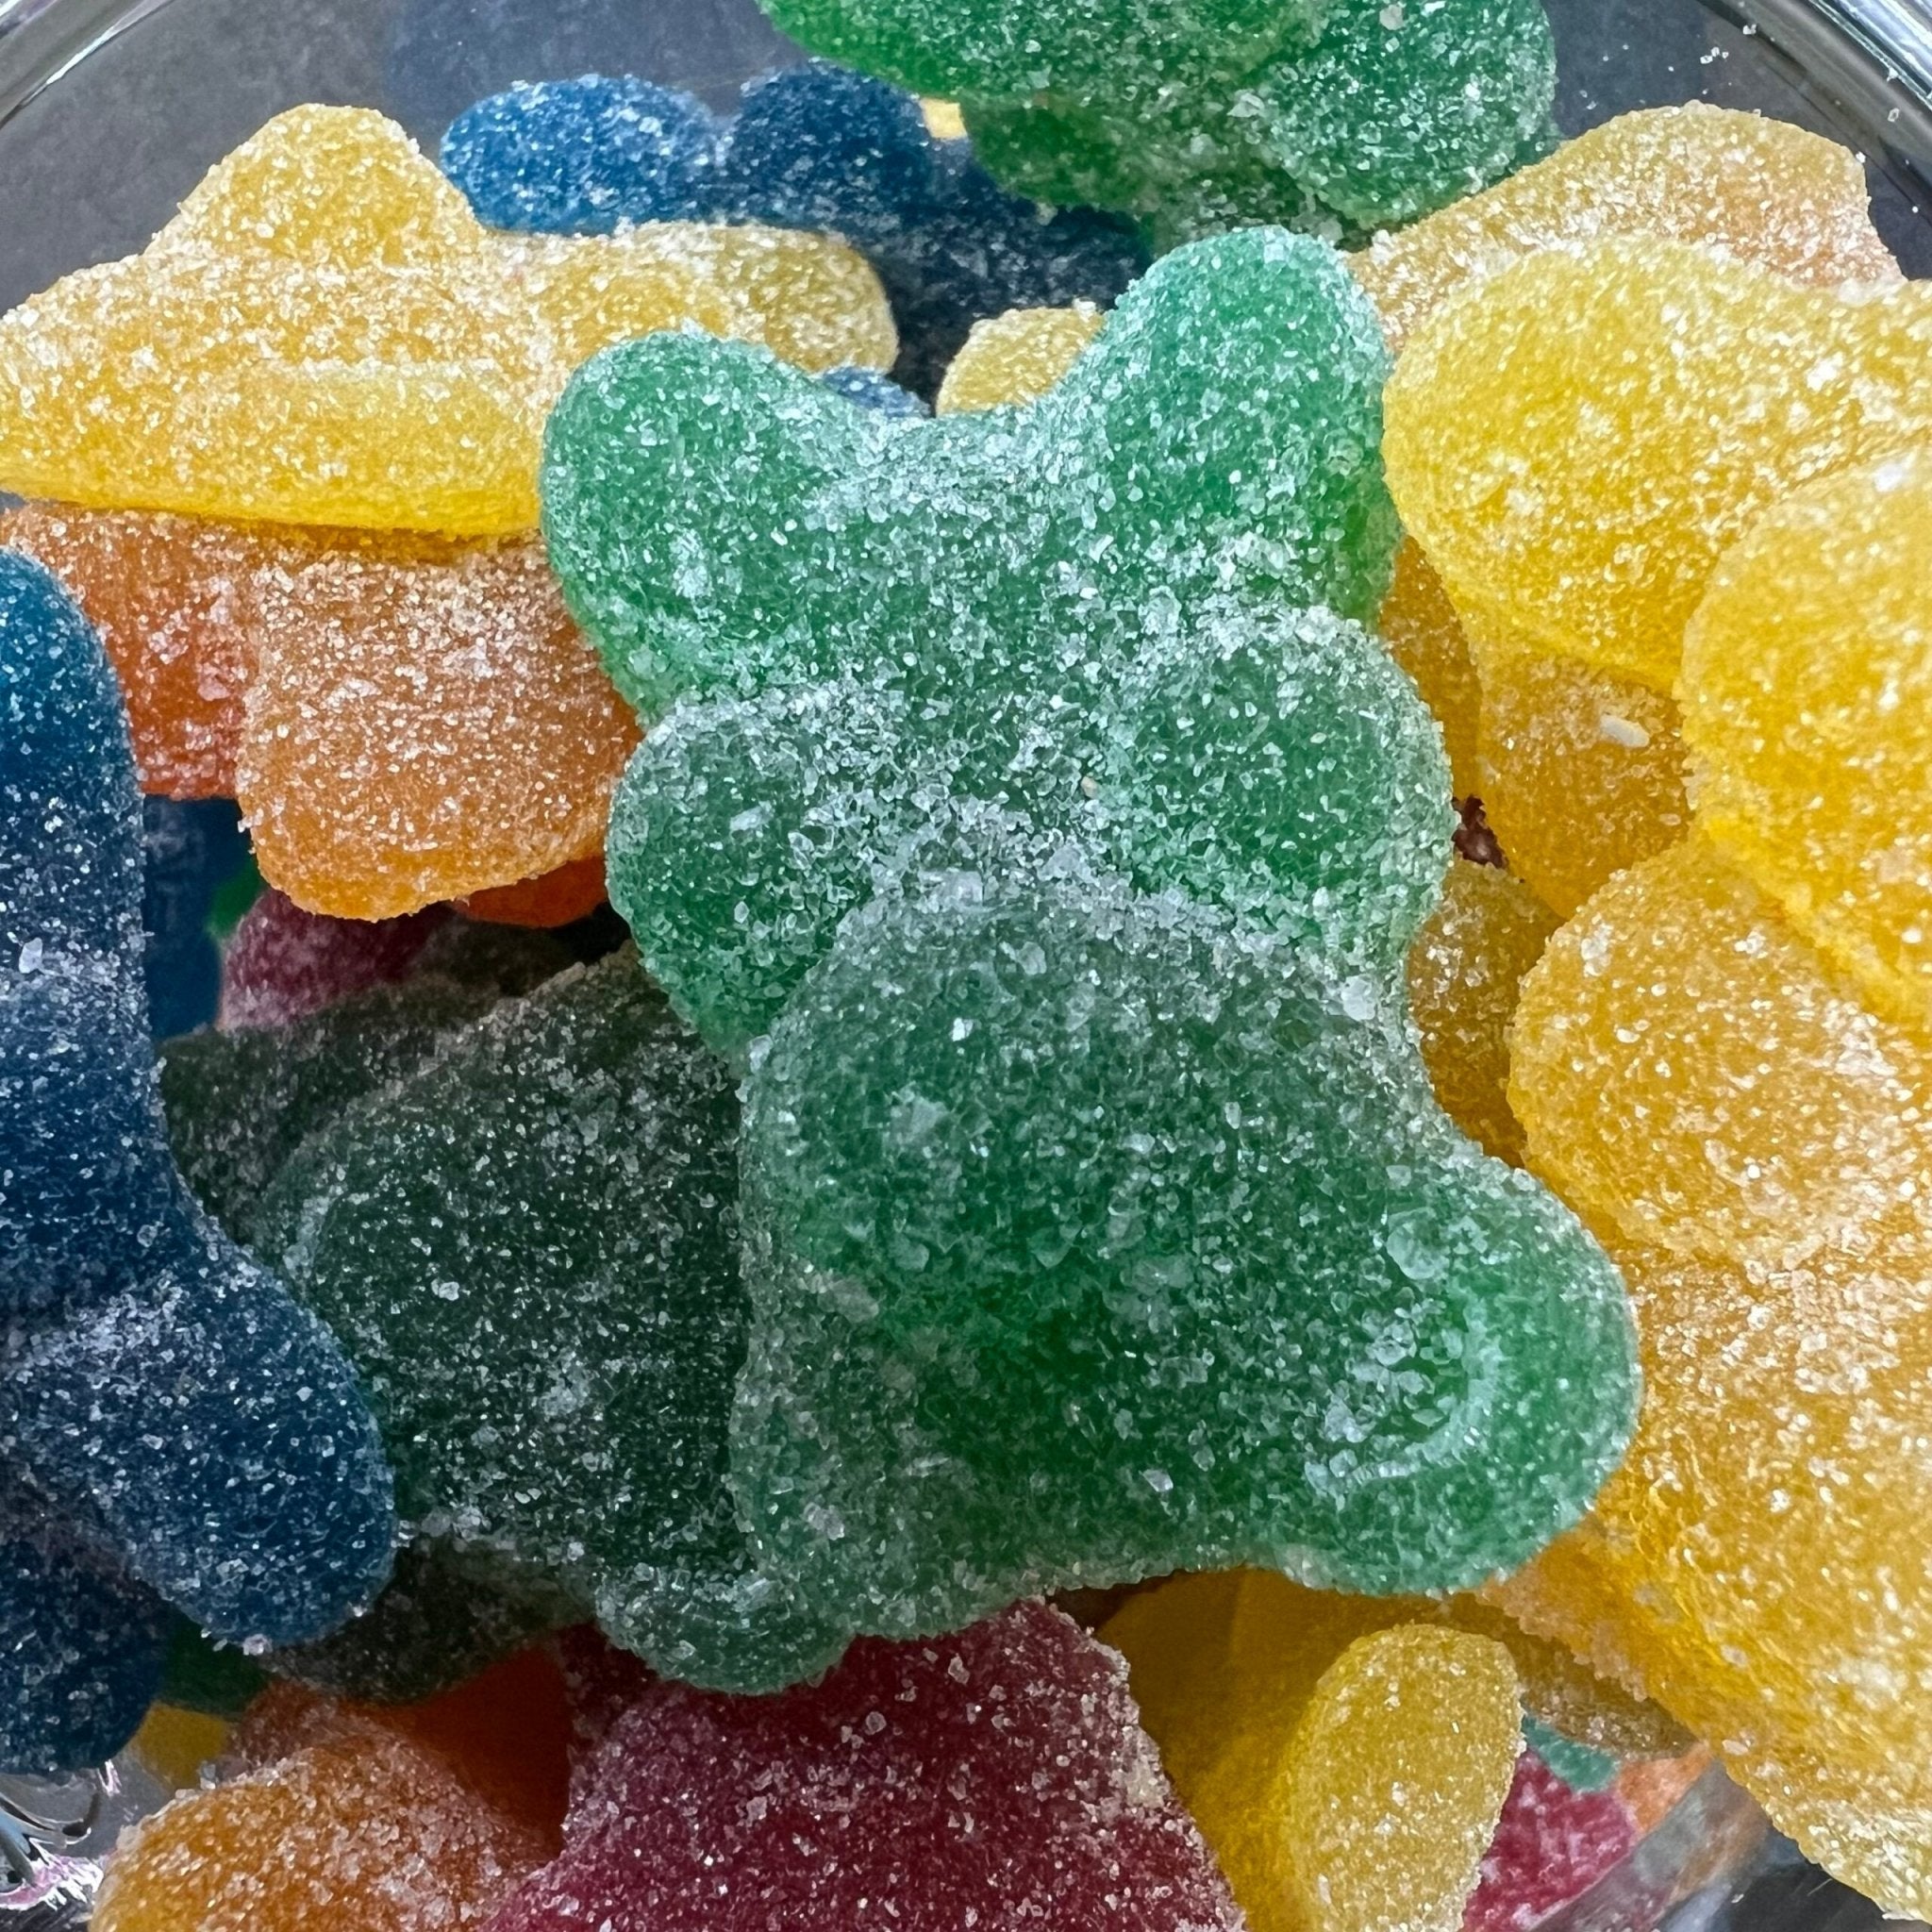 Sugar coated bears - Dream Candy